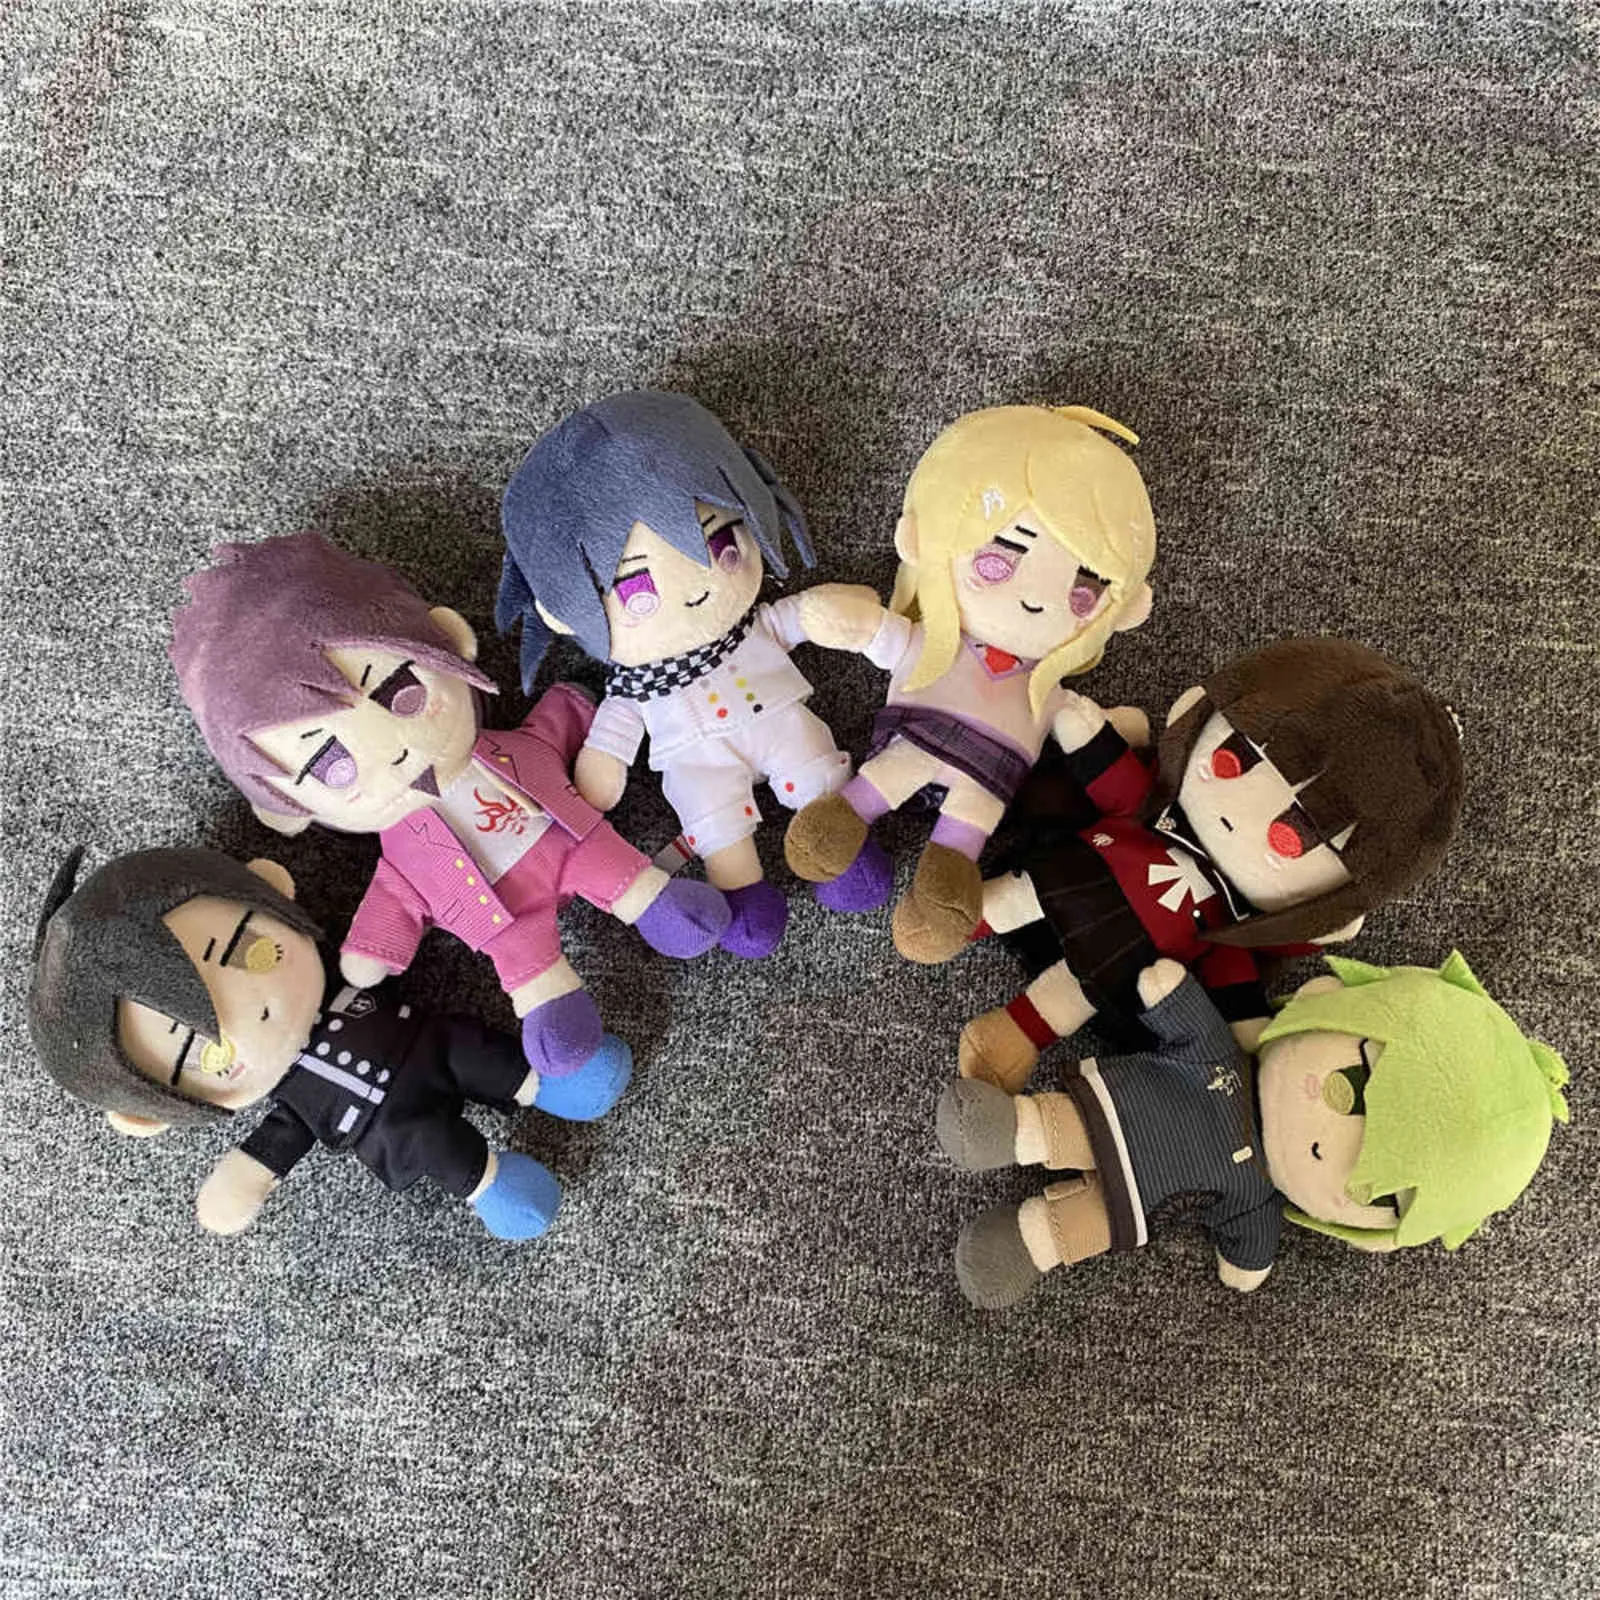 15cm Anime Danganronpa V3 Dangan Ronpa Saihara Shuichi Plush Toy Cute Soft Stuffed Dolls Key Chains for Kid Christmas Gift Y211119